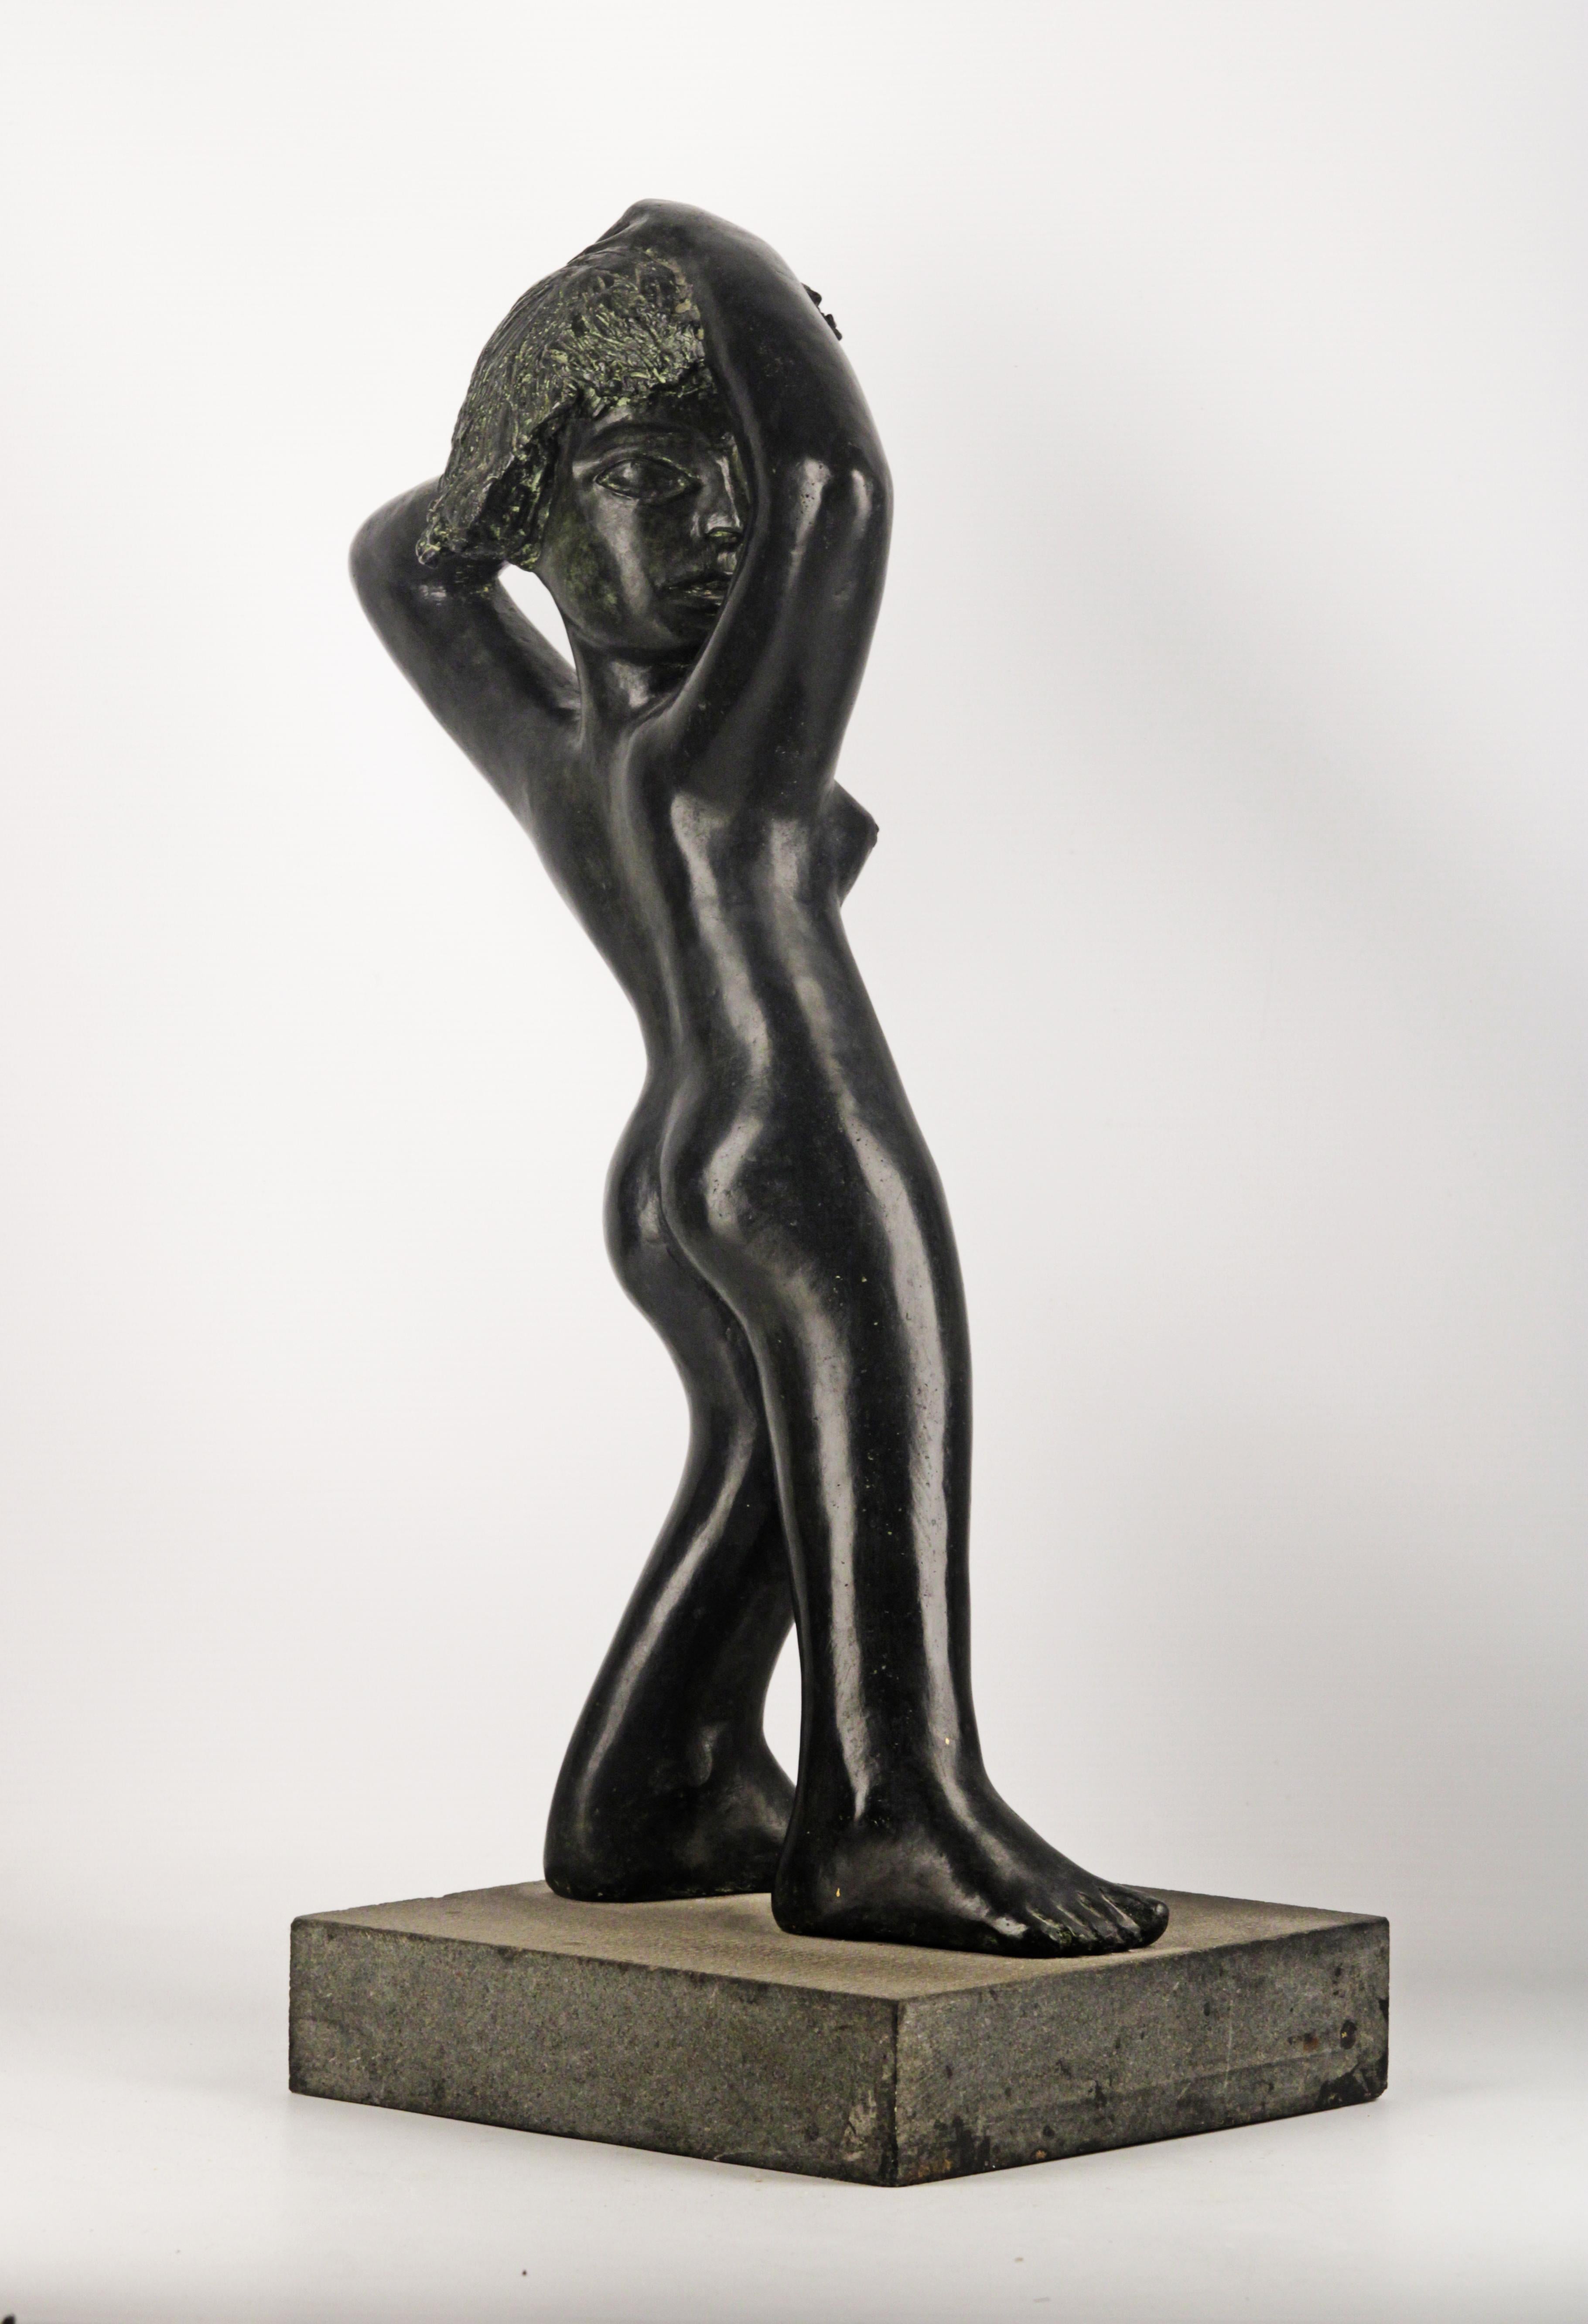 Femme nue sculpture en bronze
Bronze érotique d'une femme nue
base en pierre noire
Sculpture attribuée à Mariano Pages
Sculpteur argentin
Circa 1960 Origine : Argentine
excellent état patine noire
Mariano Pagés est un sculpteur argentin né dans la